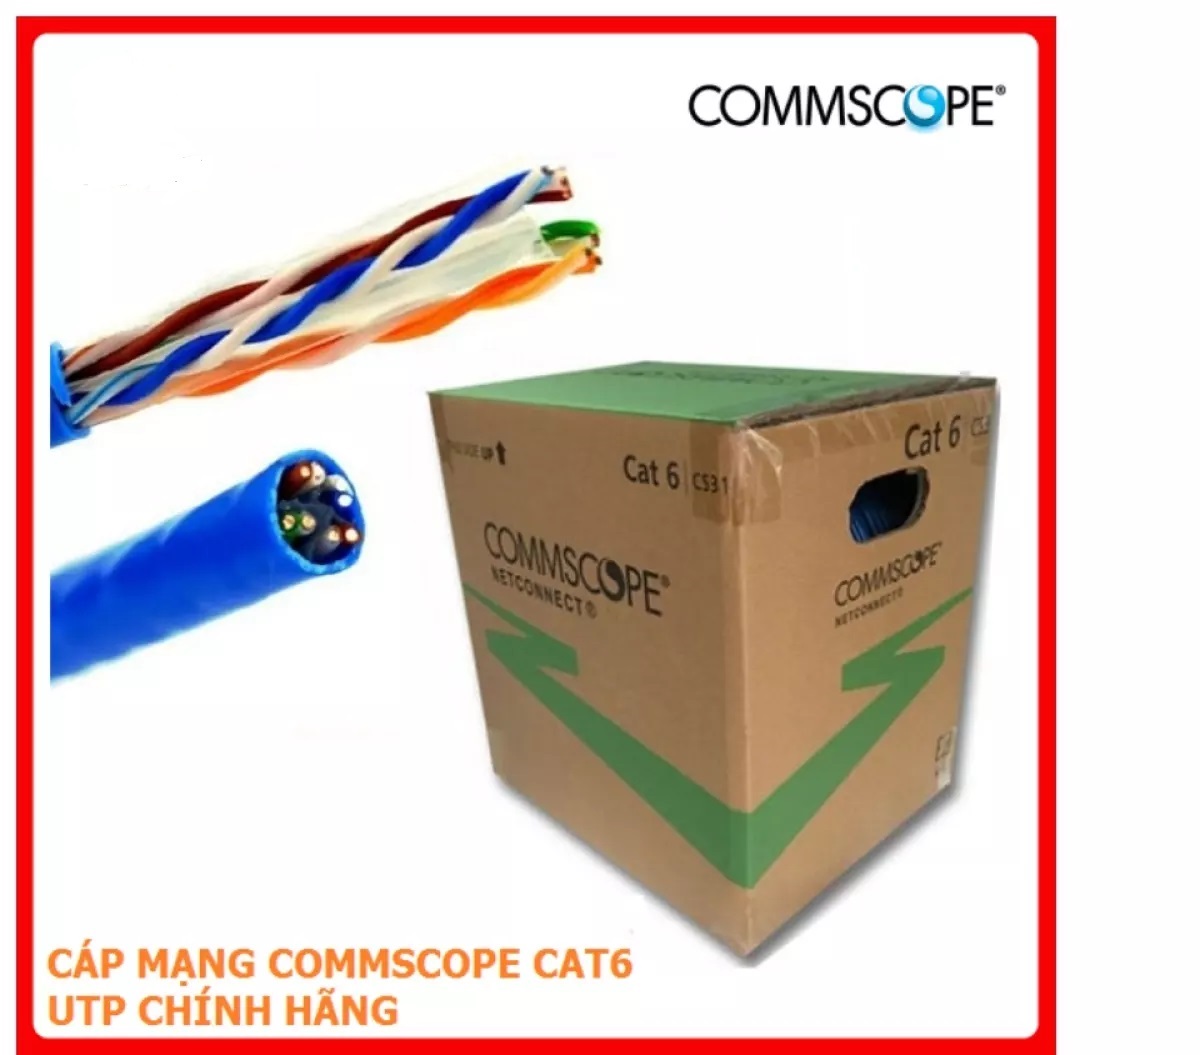 UPLOADS/COMMSCOPE CAT 6 UTP 2